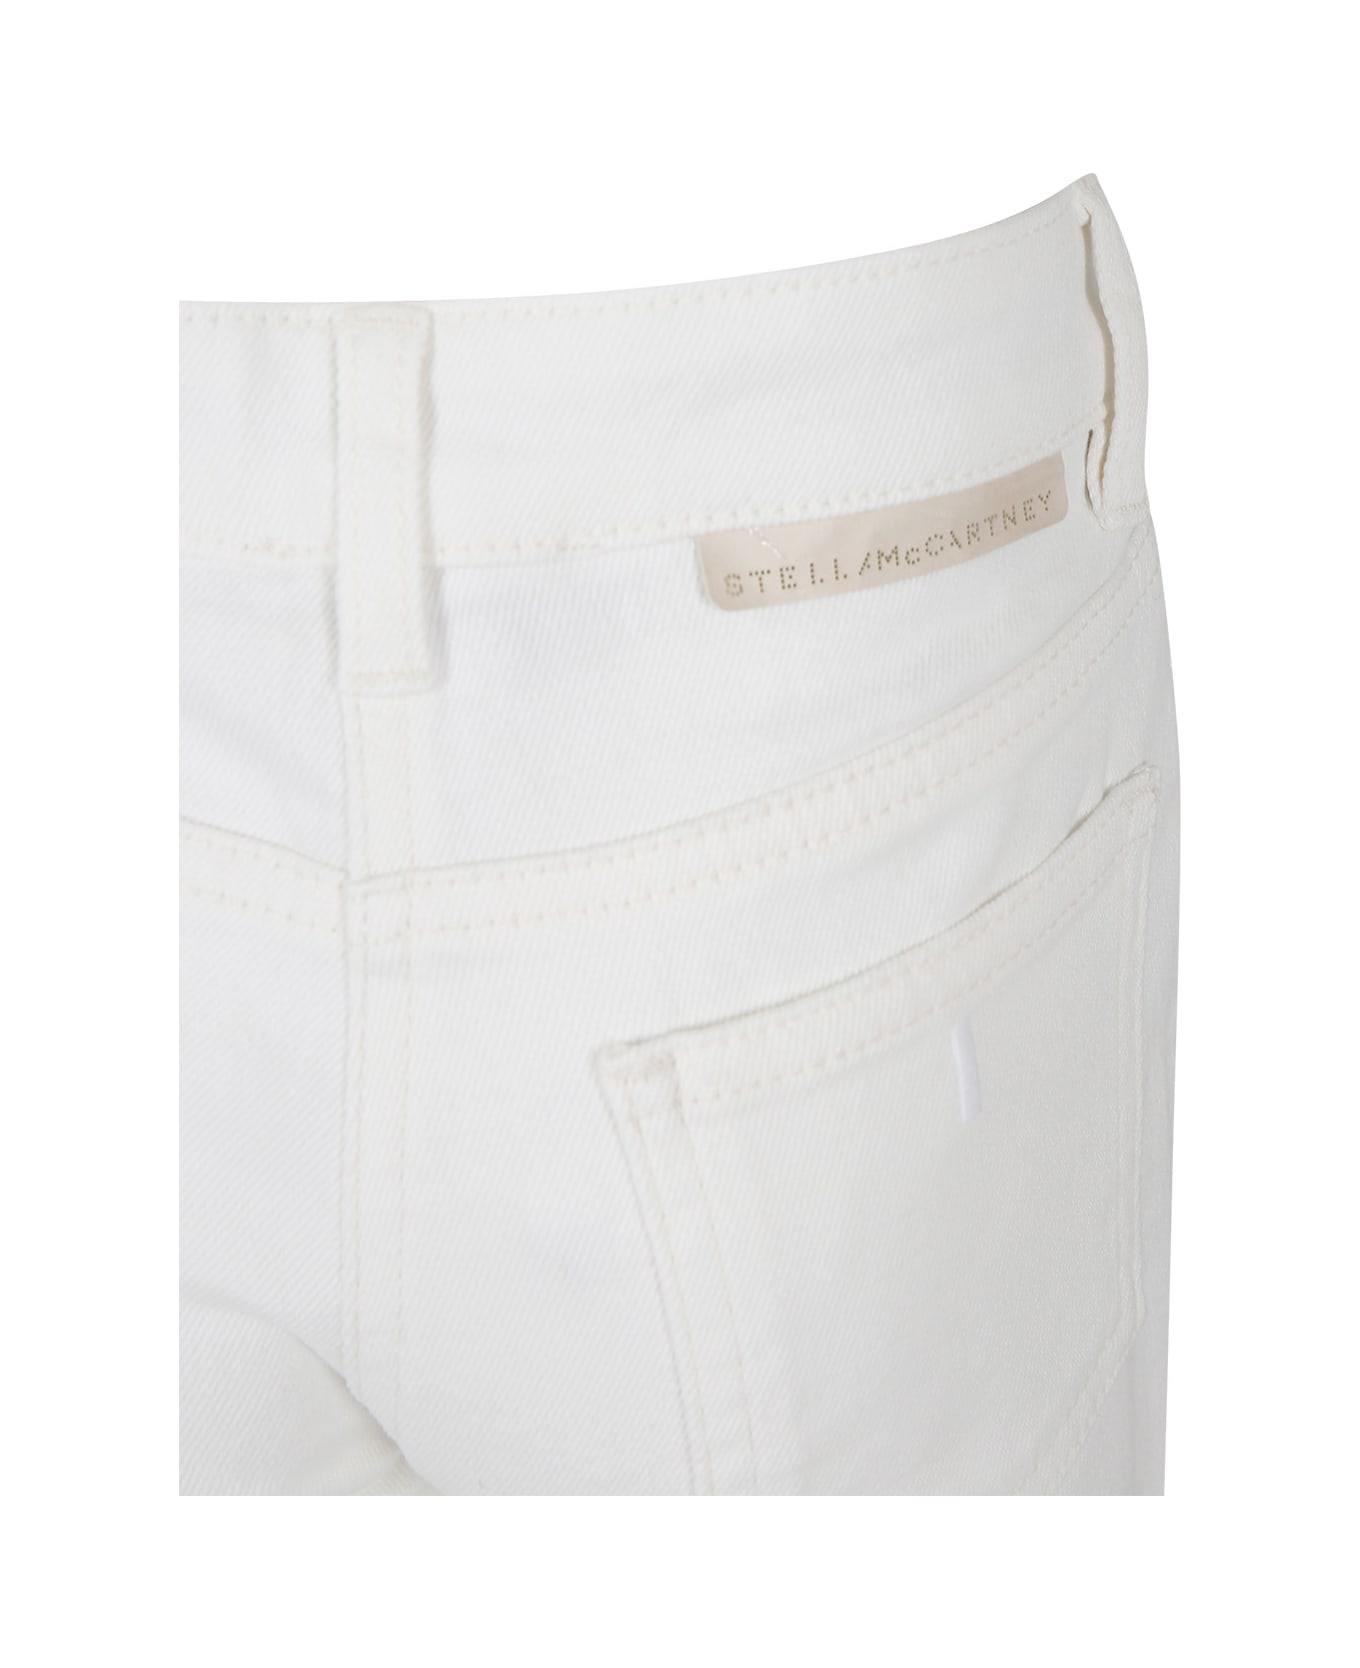 Stella McCartney Kids White Denim Jeans For Girl With Logo - White